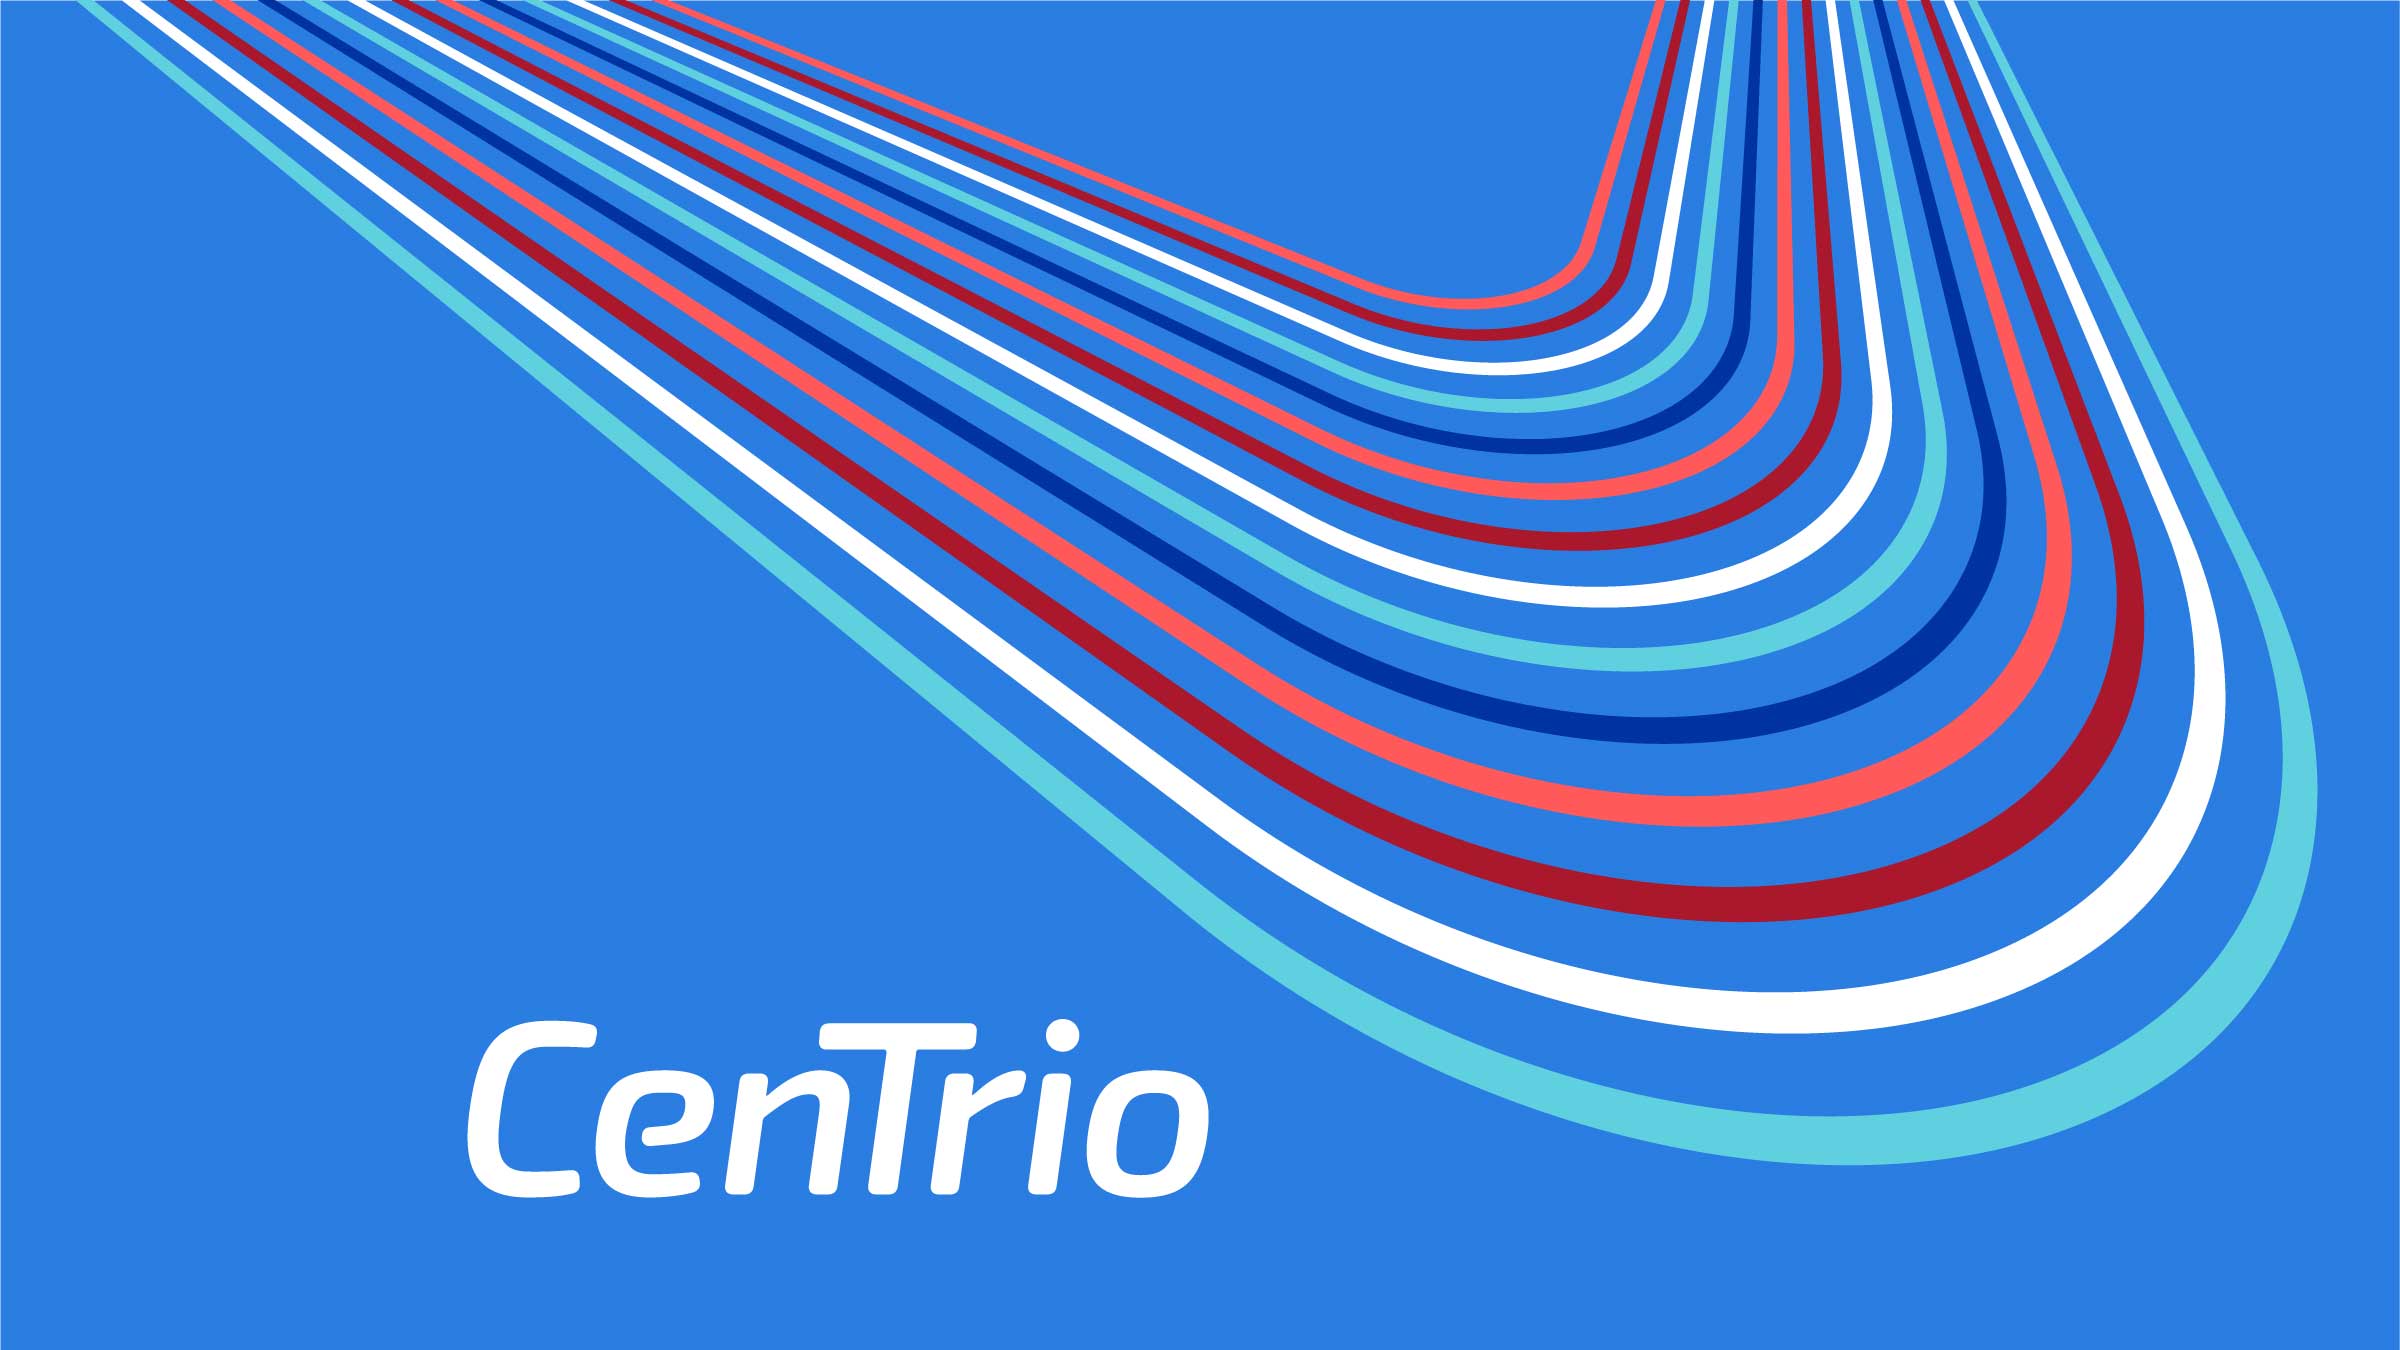 Centrio Logo Motif